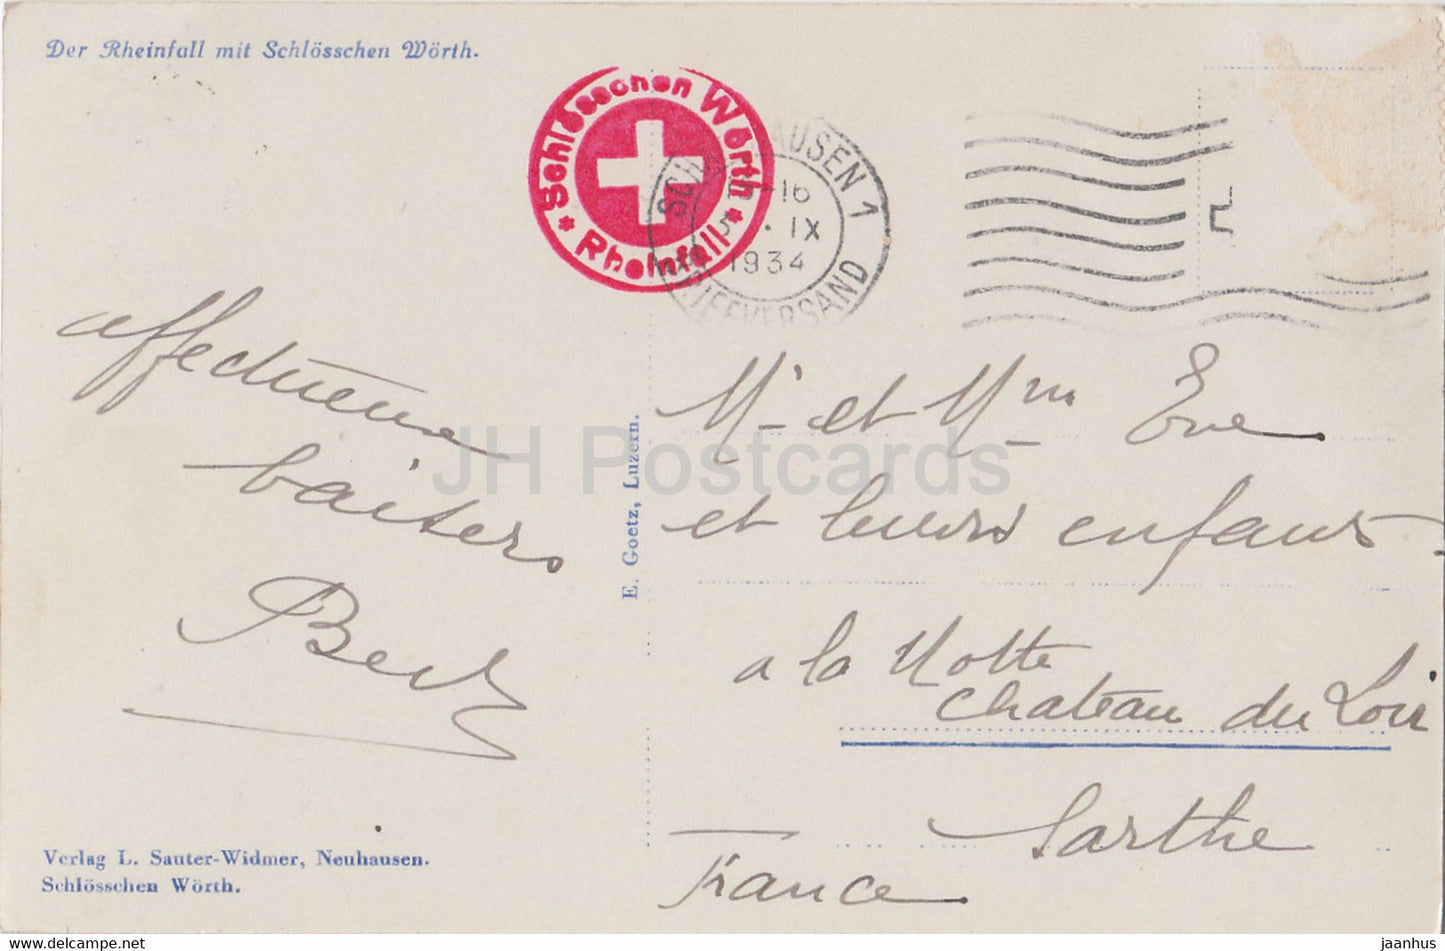 Der Rheinfall mit Schlösschen Wörth - Boot - alte Postkarte - 1934 - Schweiz - gebraucht